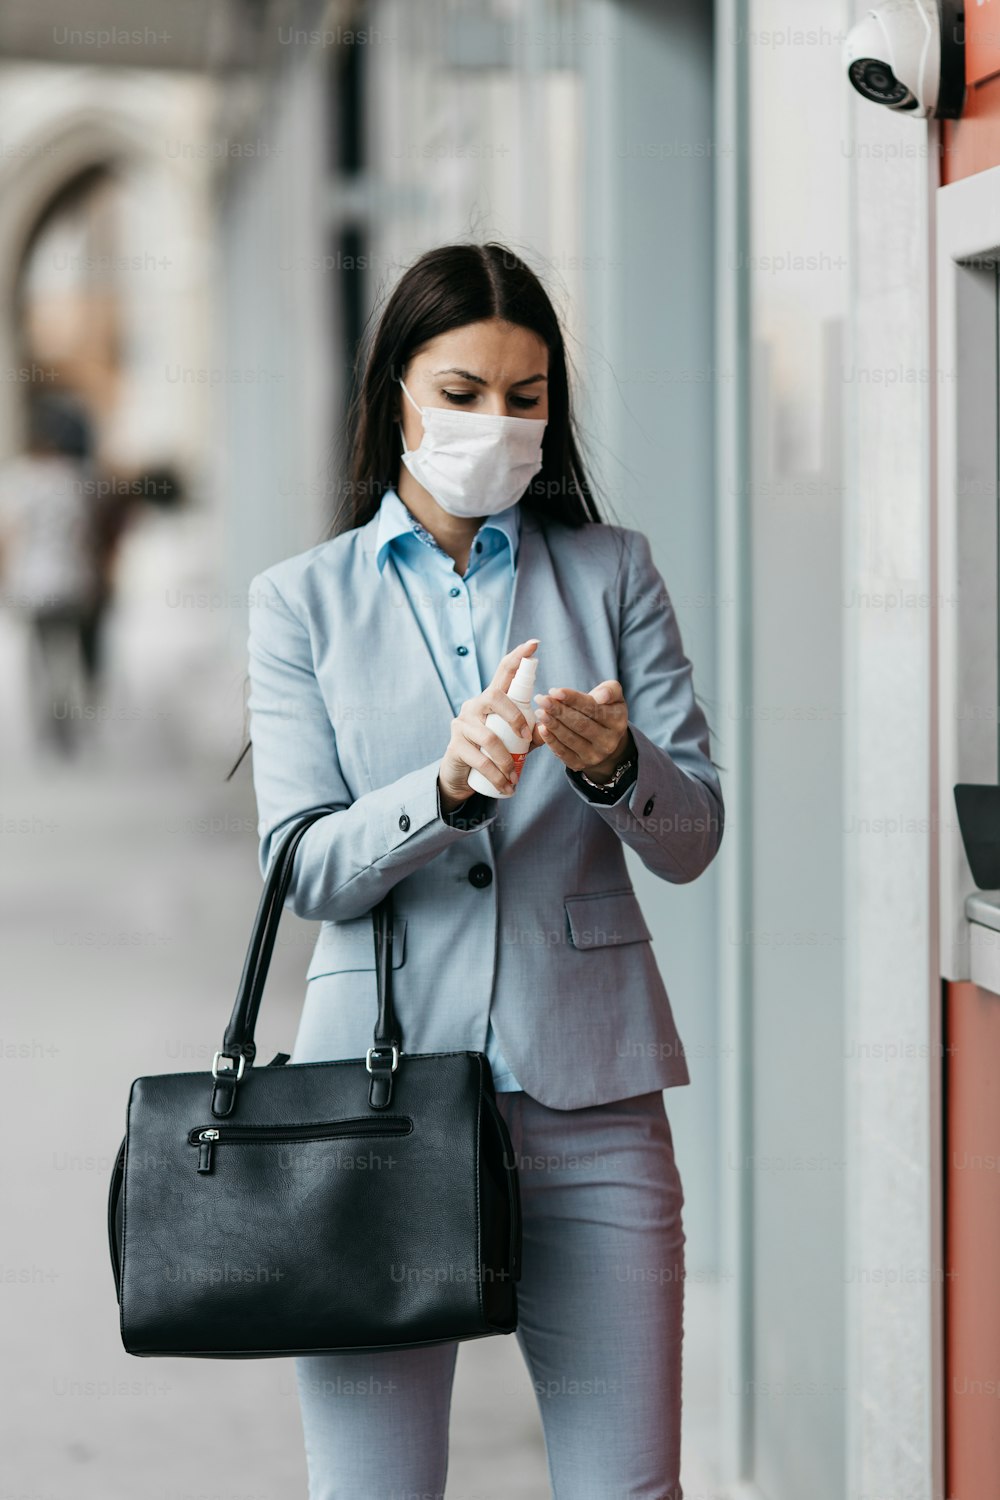 Elegante Geschäftsfrau mit Schutzmaske, die auf der Stadtstraße steht und am Geldautomaten Bargeld abhebt. Corona- oder Covid-19-Virus-Pandemie-Konzept.